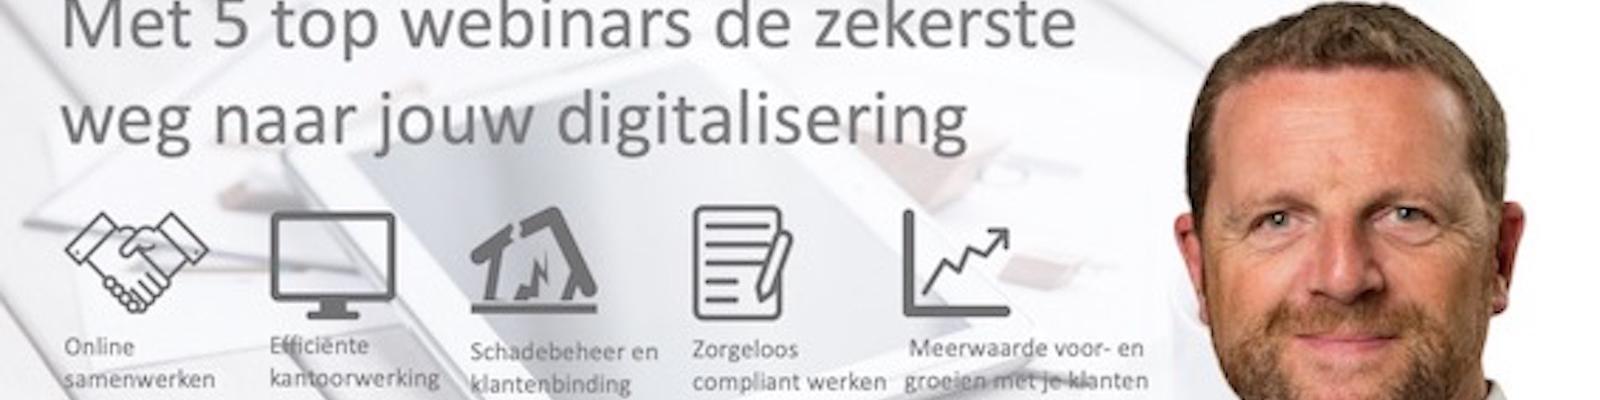 Webinar #Digitalbroker: Meerwaarde voor- en groeien met je klanten